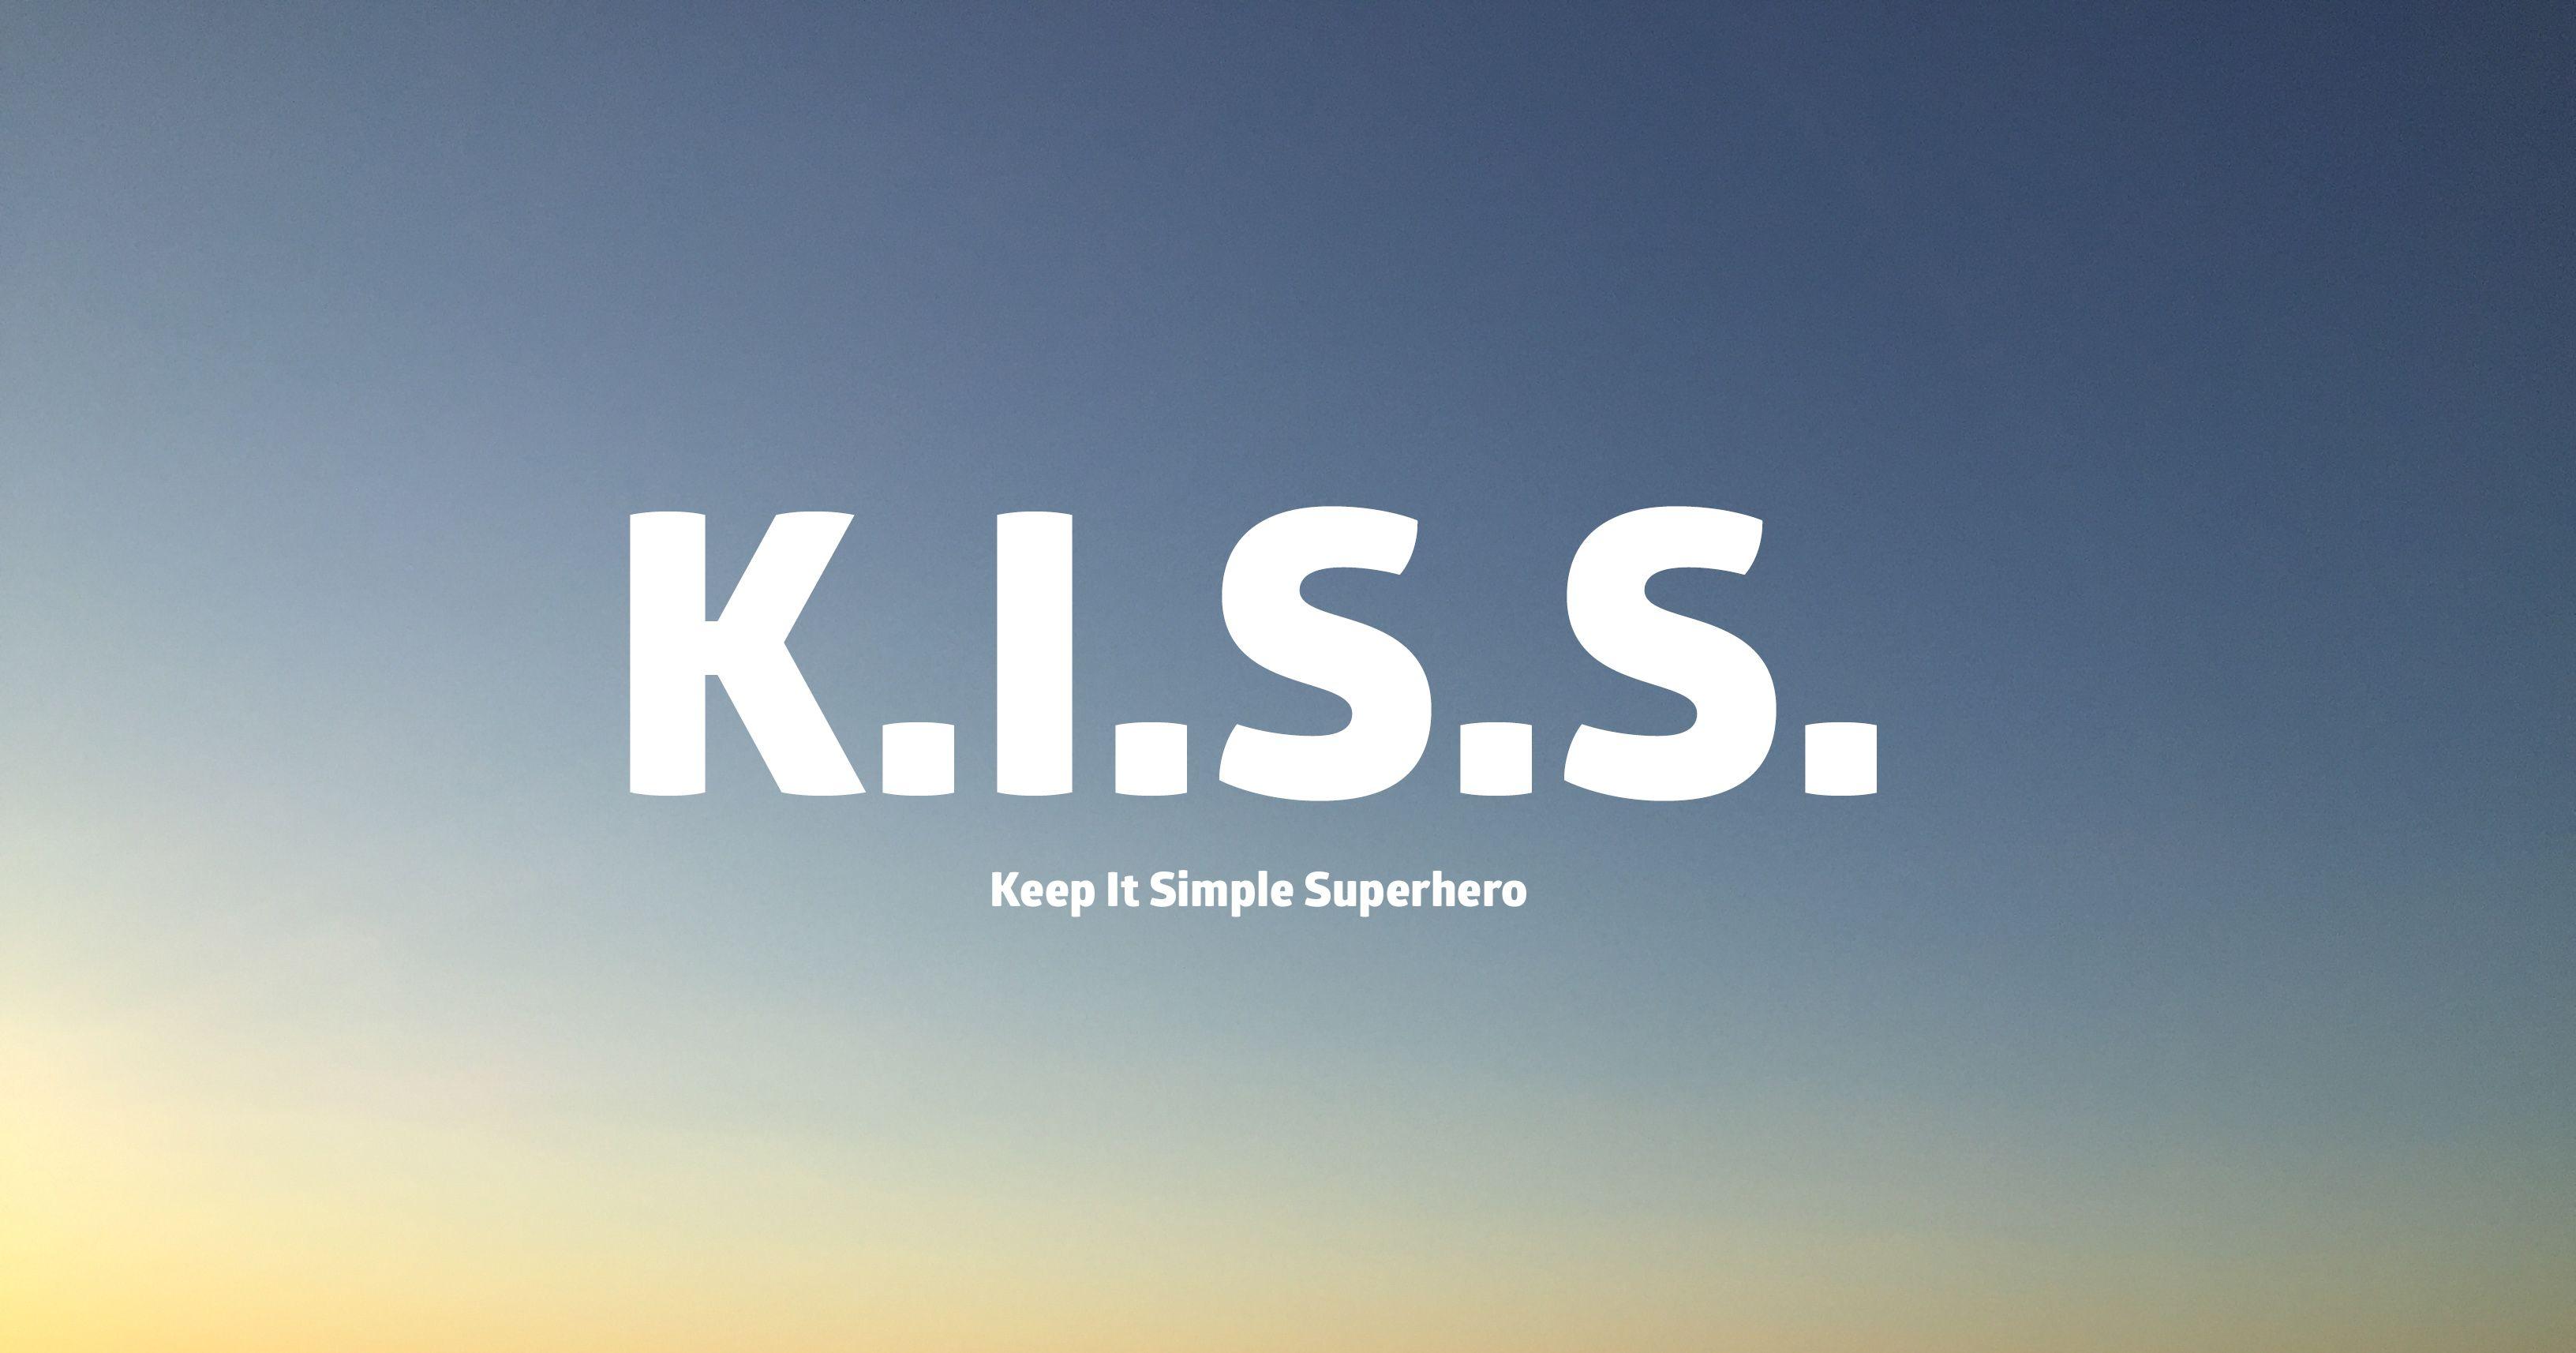 Simple Superhero Logo - Keep It Simple Superhero - Life is good